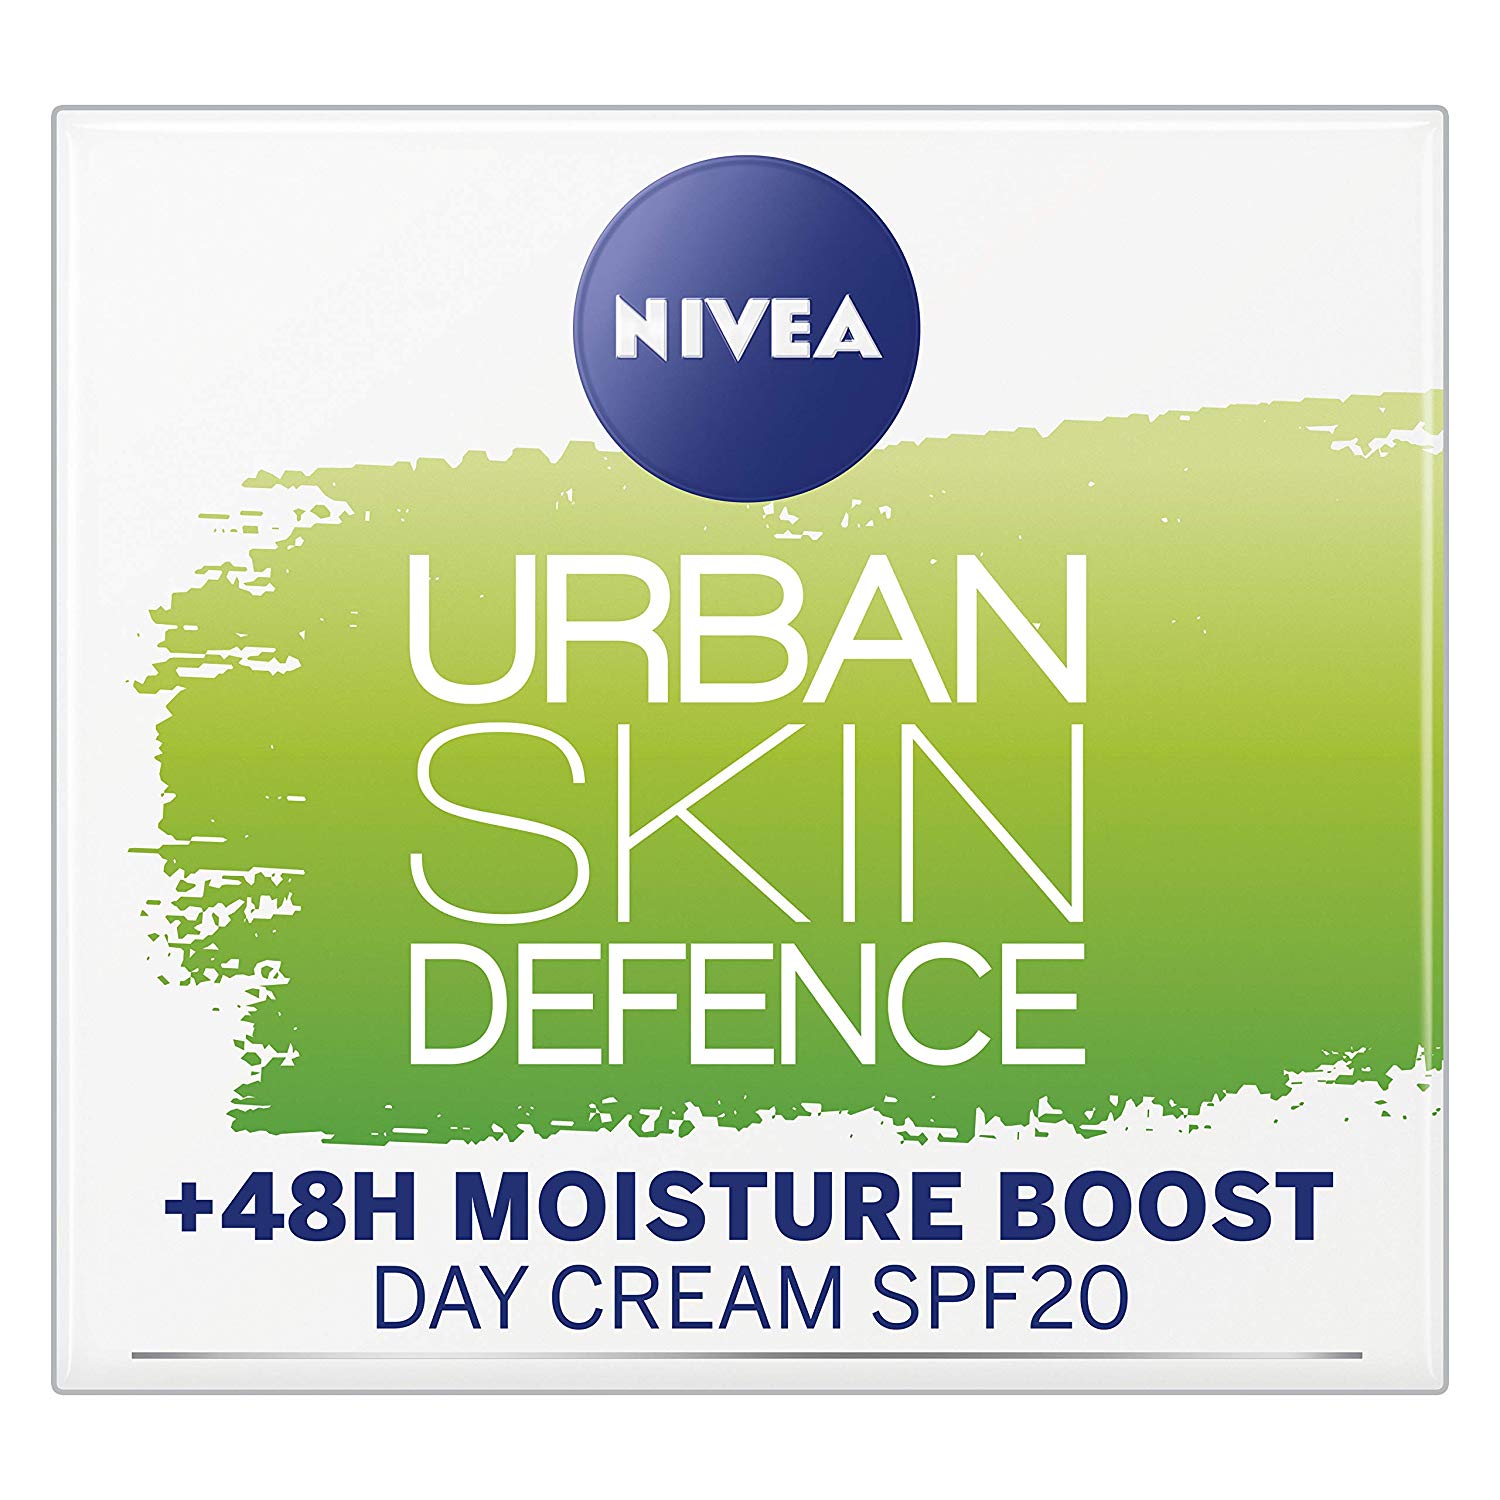 Nivea Essentials Urban Skin Defence Super Idratante +48H, Crema Giorno Viso Detox  50 ml